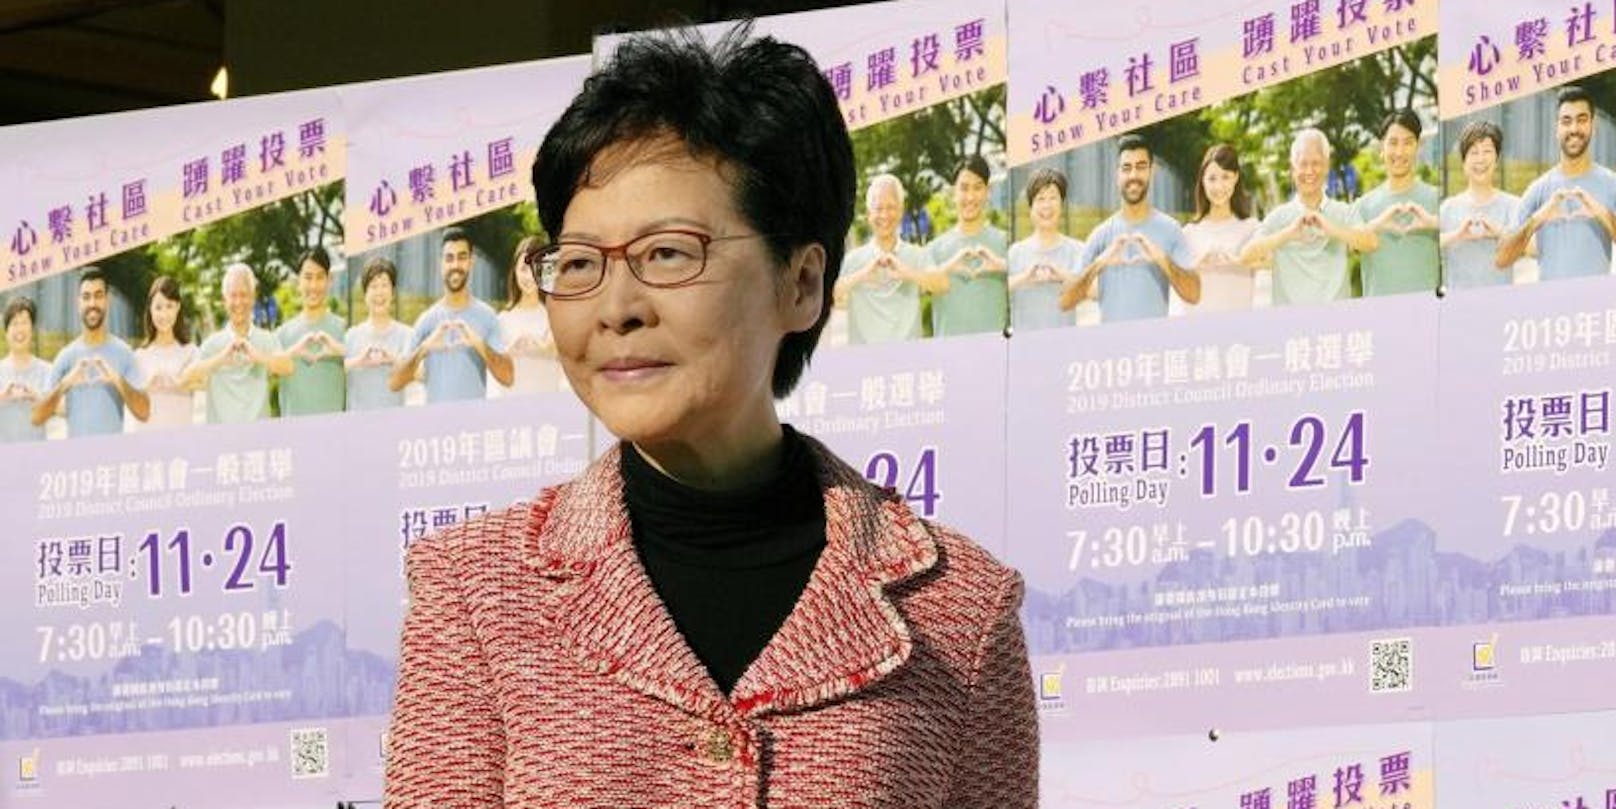 Nach der schweren Wahlschlappe will Hongkongs Regierungschefin Carrie Lam "demütig und ernsthaft" nachdenken.